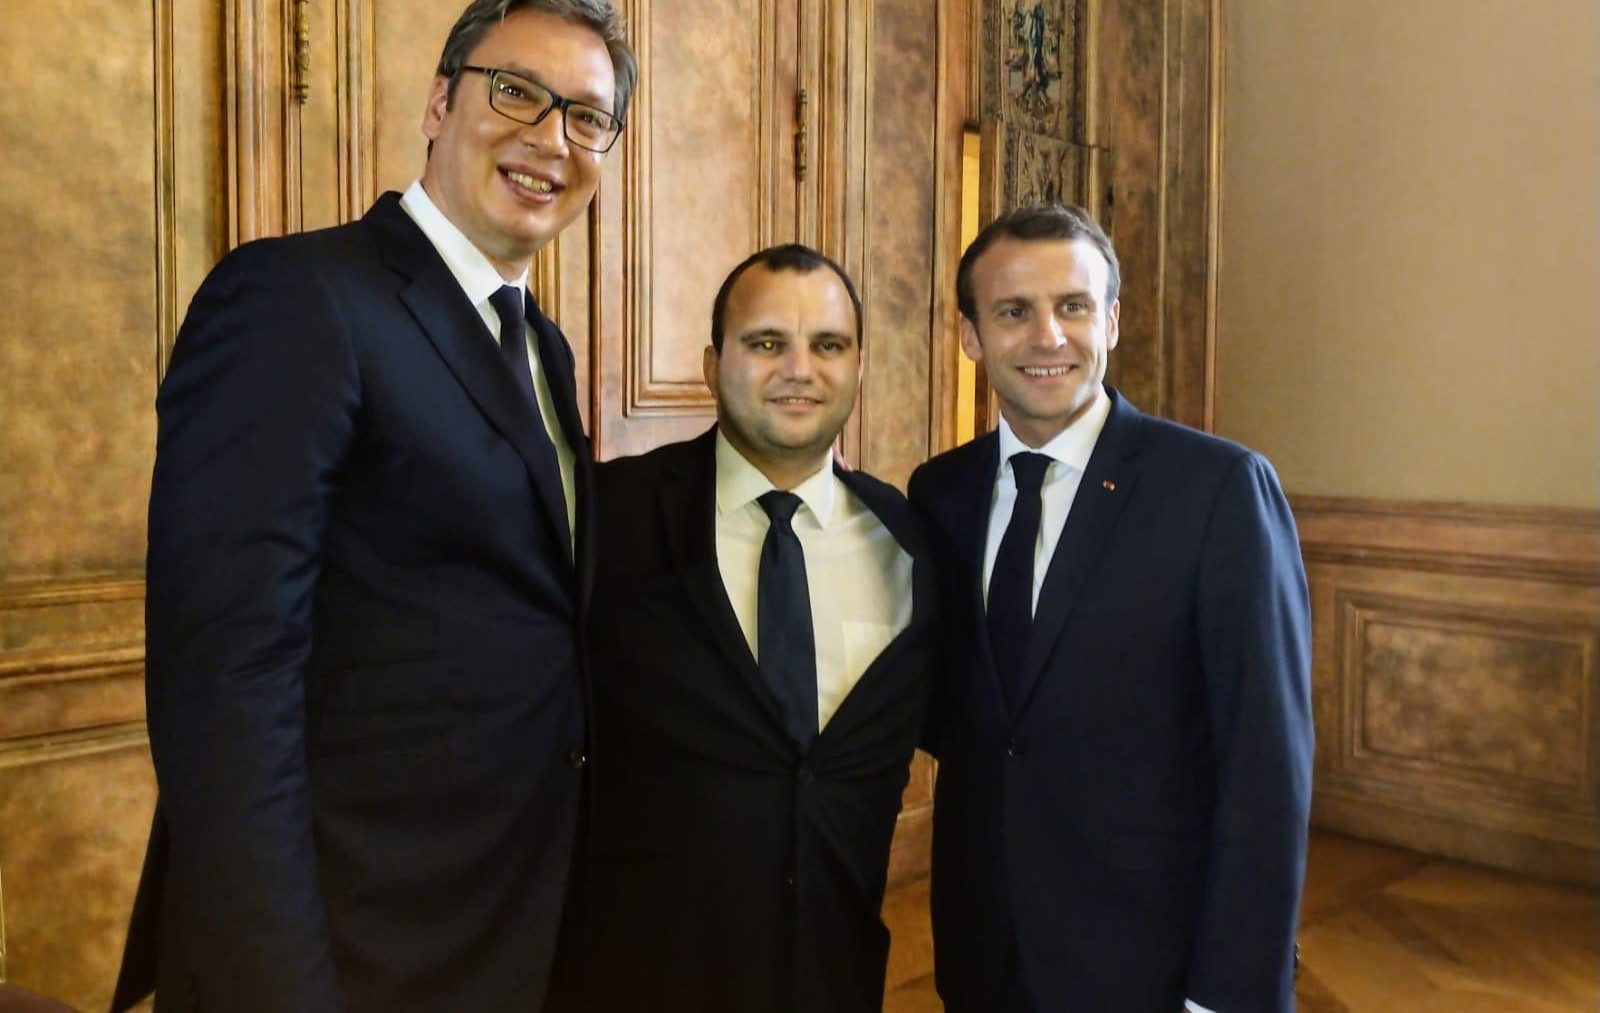 (FOTO) VUČIĆ NIJE BIO JEDINI SRBIN U JELISEJSKOJ PALATI: Zlatan iz Svilajnca rame uz rame sa srpskim i francuskim predsednikom!